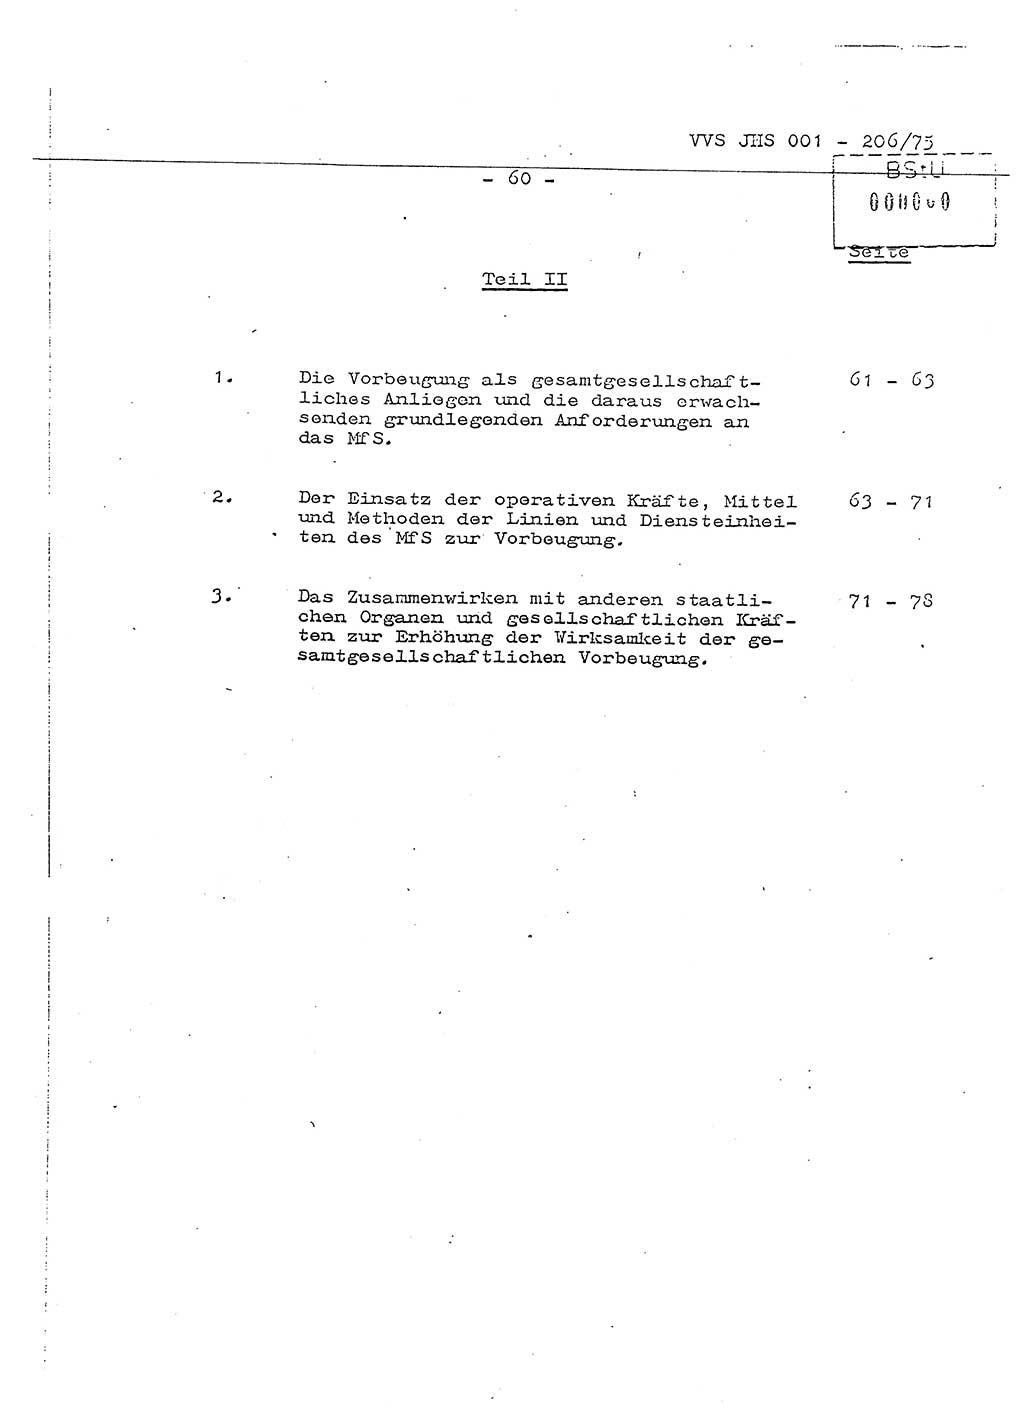 Dissertation Generalmajor Manfred Hummitzsch (Leiter der BV Leipzig), Generalmajor Heinz Fiedler (HA Ⅵ), Oberst Rolf Fister (HA Ⅸ), Ministerium für Staatssicherheit (MfS) [Deutsche Demokratische Republik (DDR)], Juristische Hochschule (JHS), Vertrauliche Verschlußsache (VVS) 001-206/75, Potsdam 1975, Seite 60 (Diss. MfS DDR JHS VVS 001-206/75 1975, S. 60)